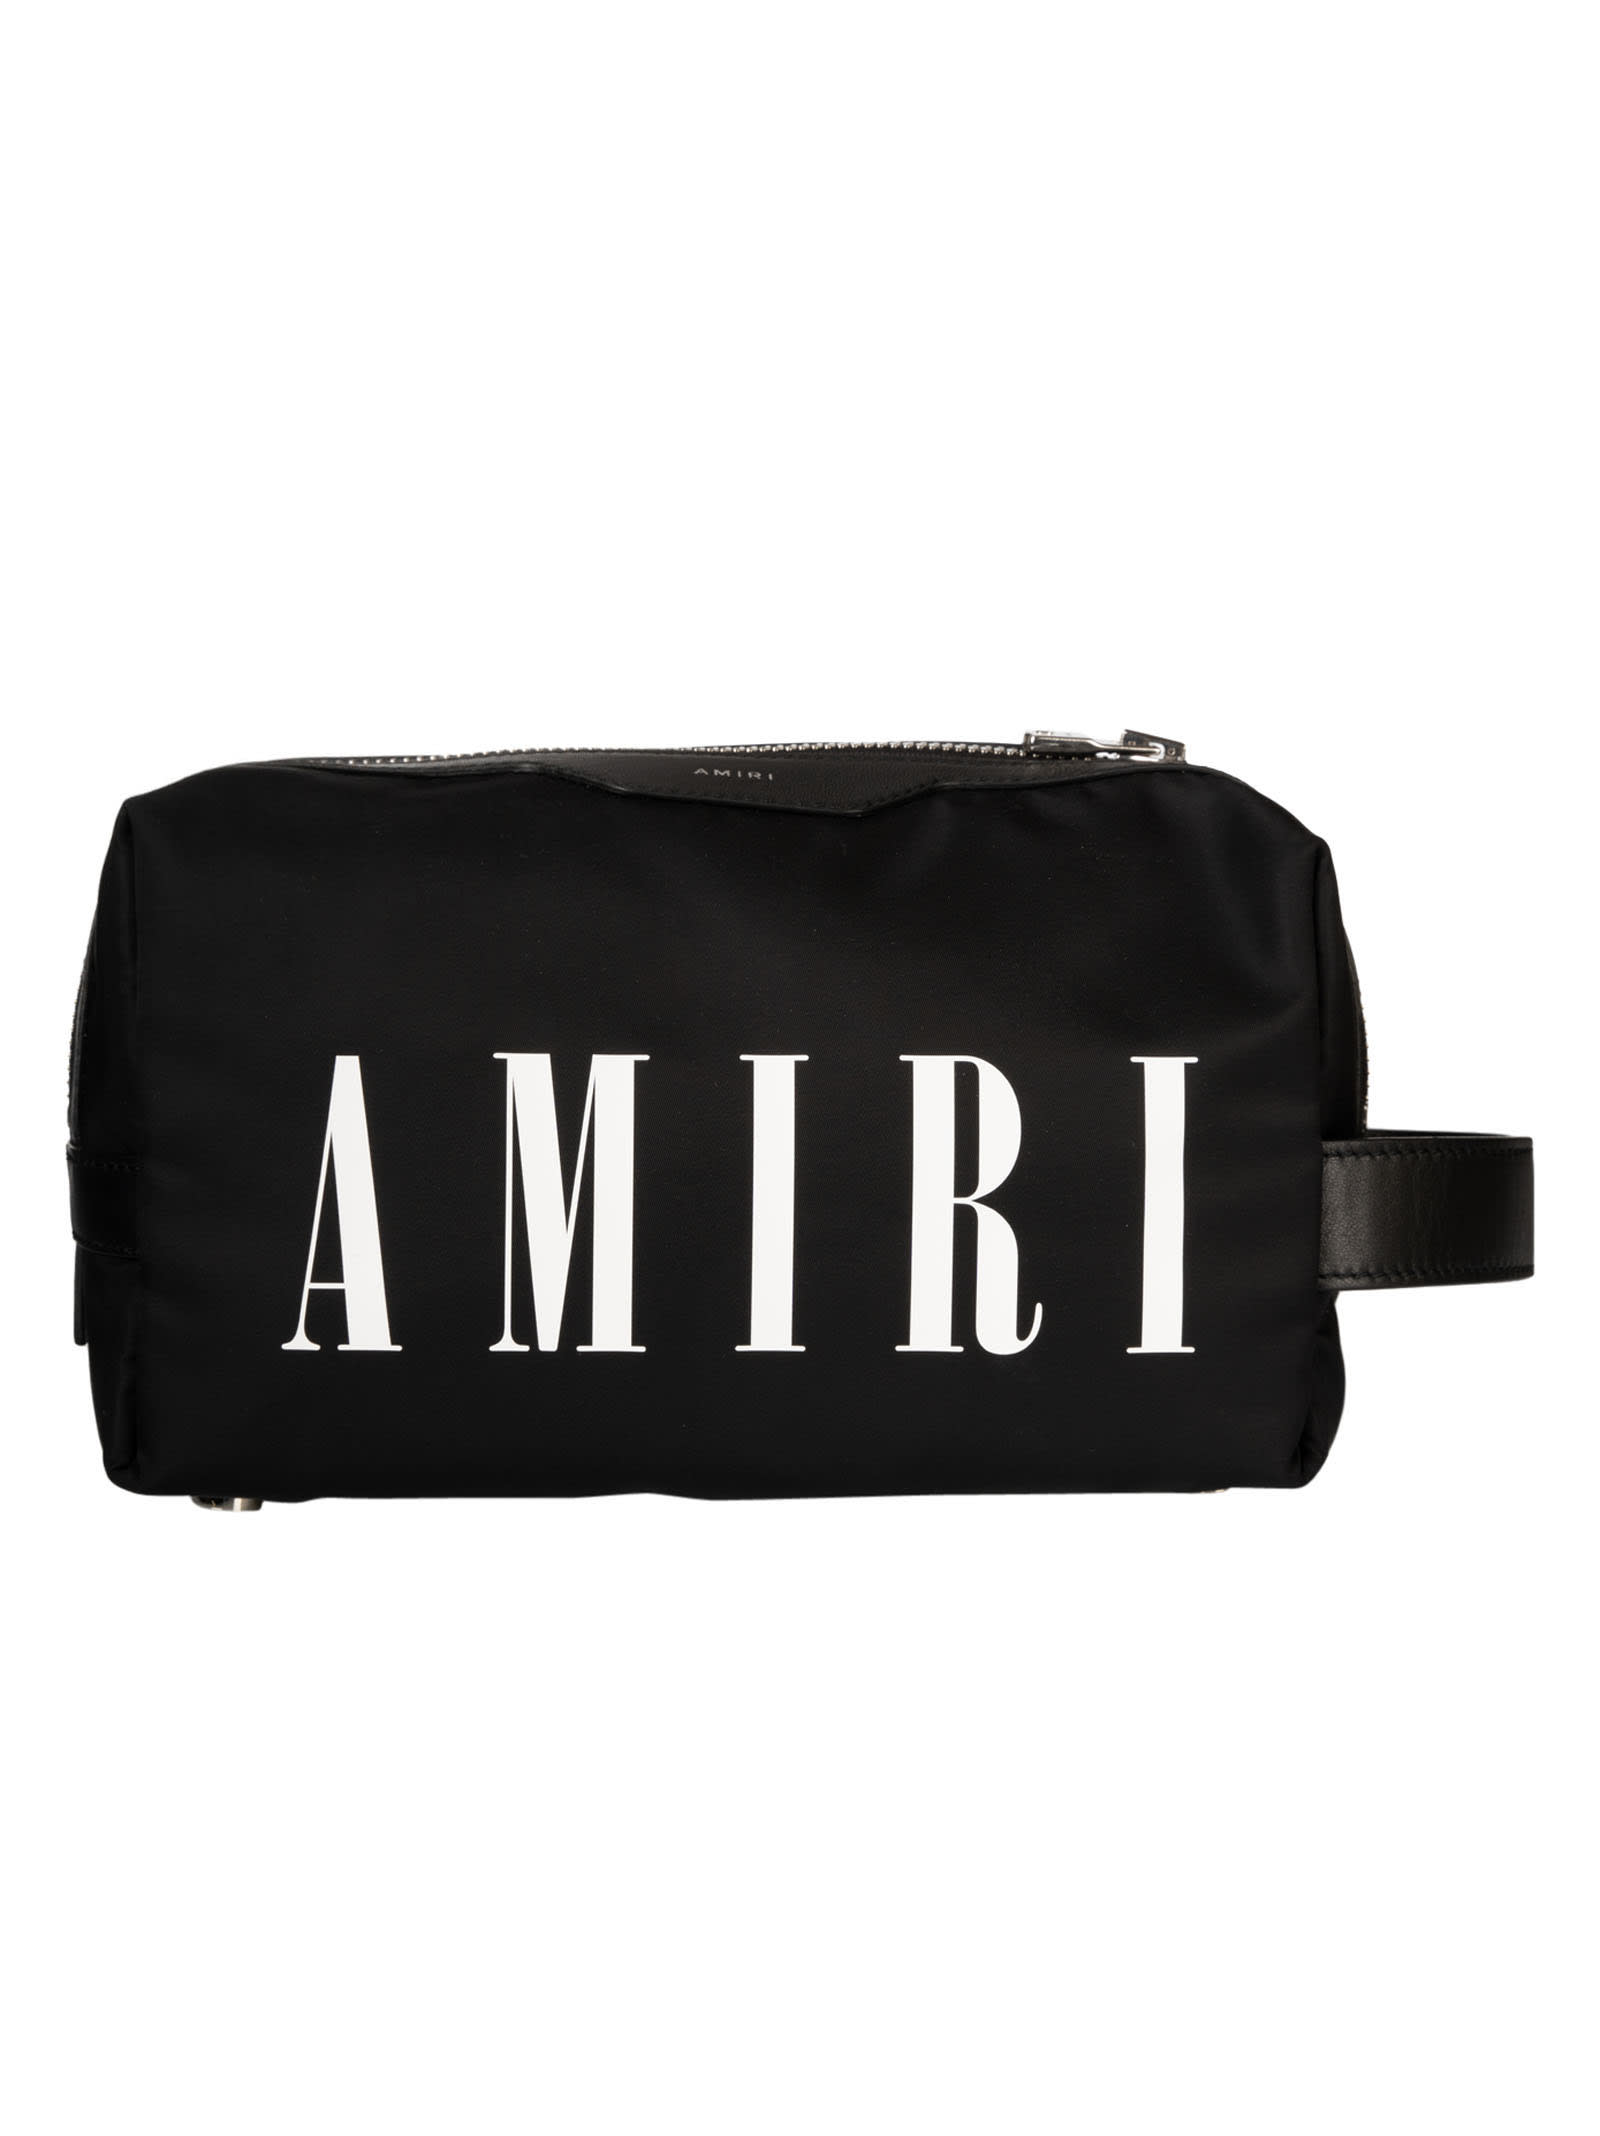 AMIRI Logo Dopp Kit